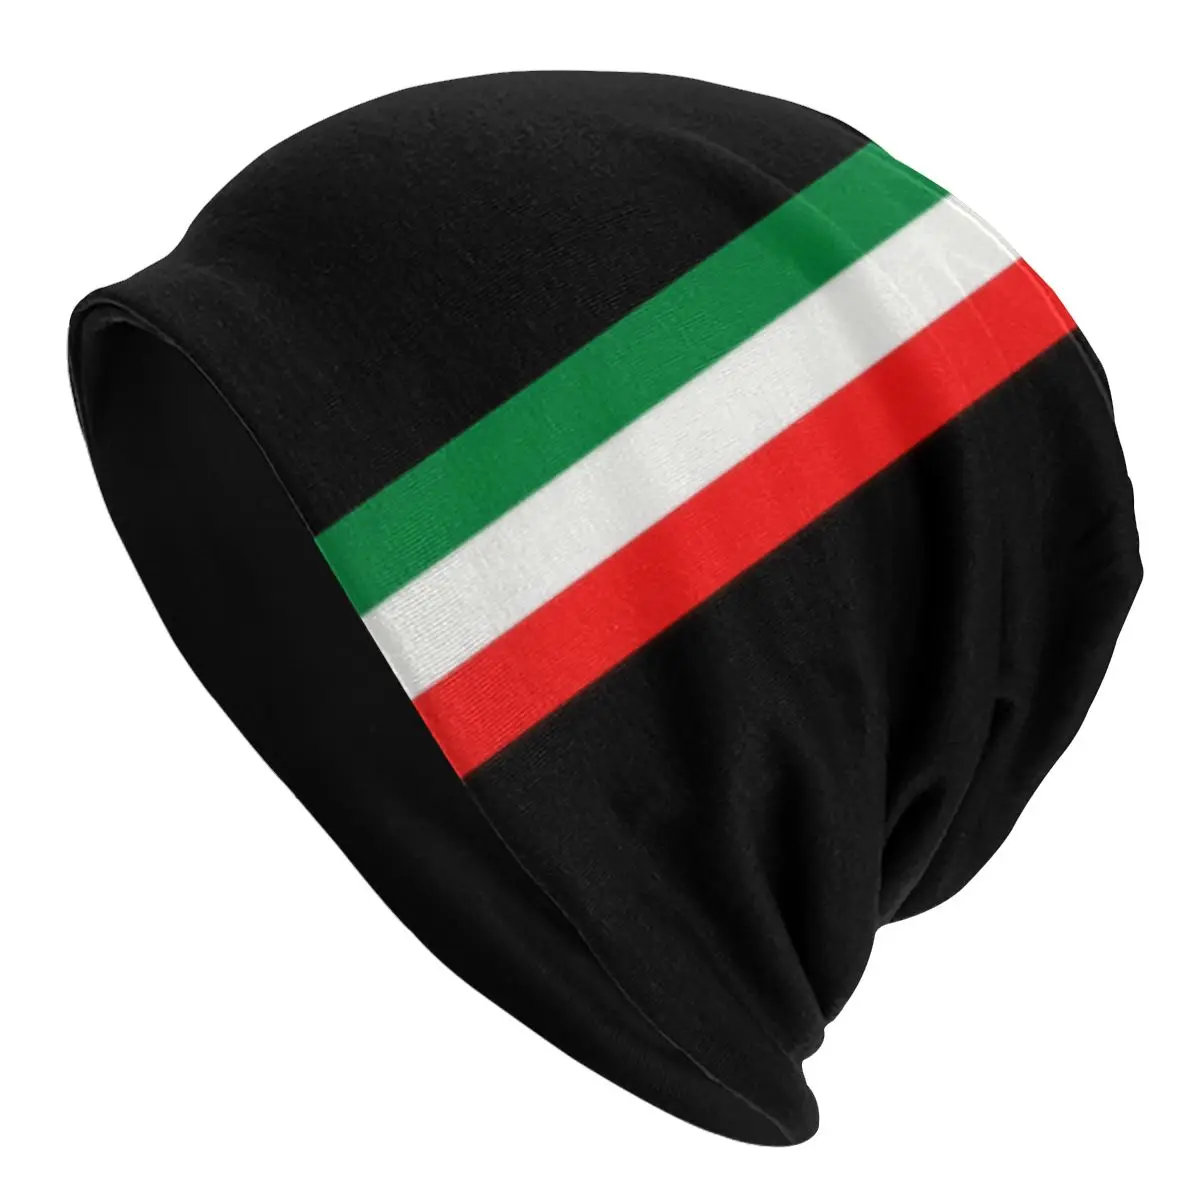 Унисекс Зимние Теплые Вязаные шапки-капоты Homme, Крутые минималистичные шапочки-бини с флагом Италии, уличные лыжные шапочки Итальянской гордости для мужчин . ' - ' . 0